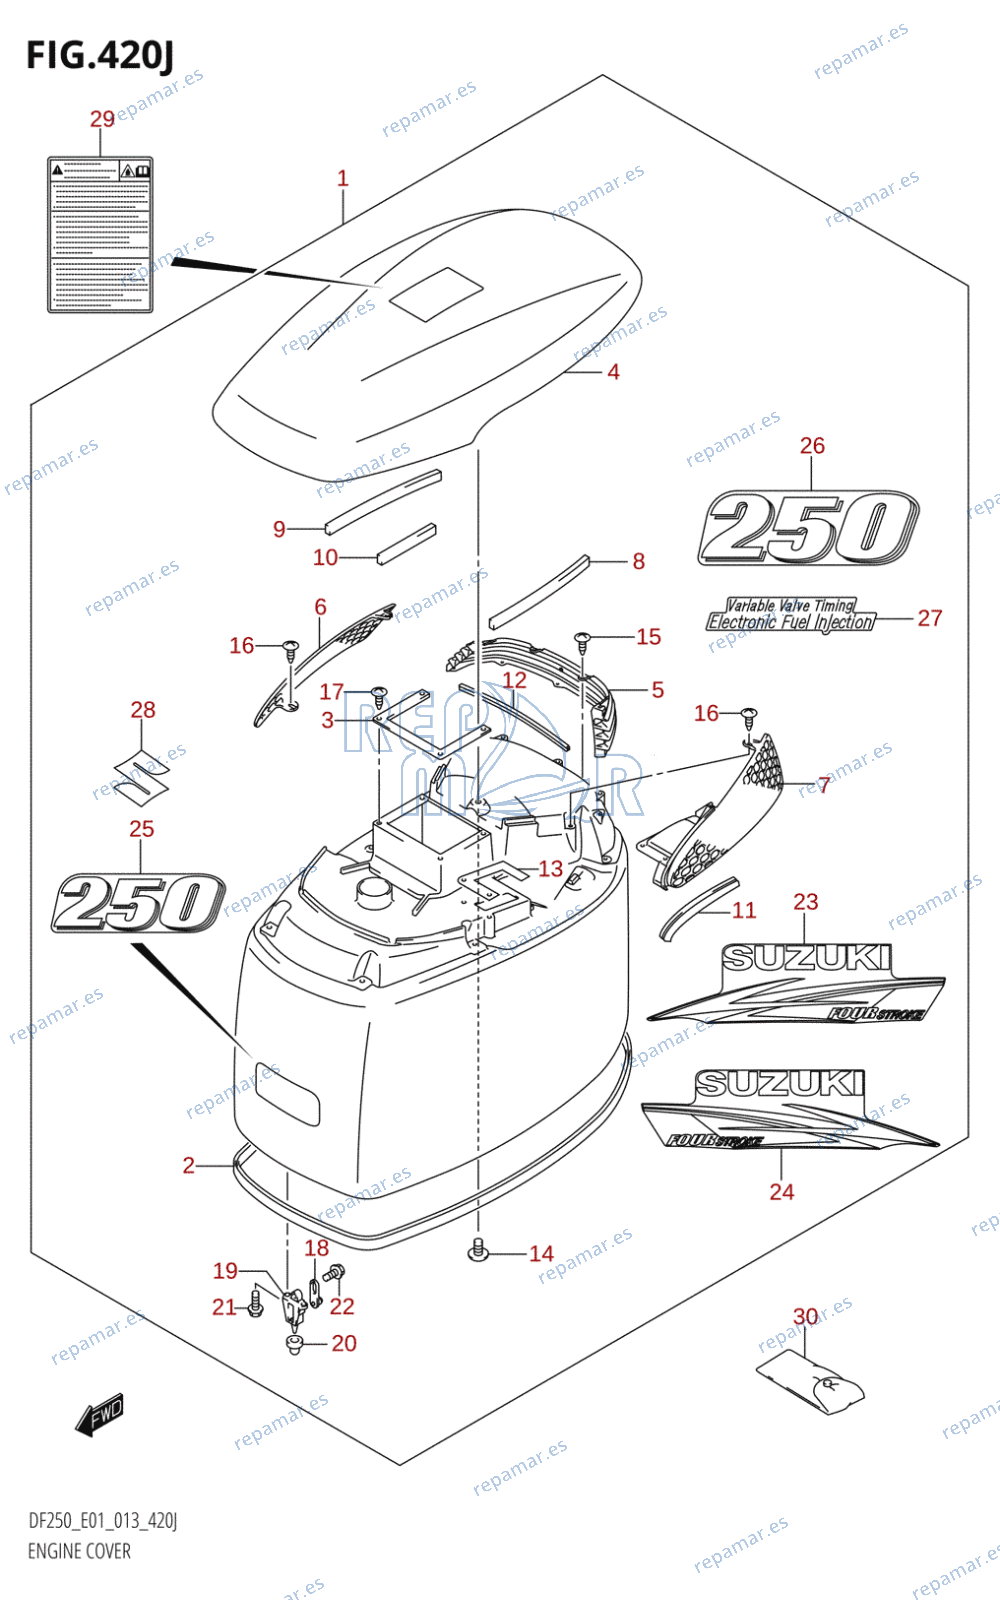 420J - ENGINE COVER (DF250T:E01)